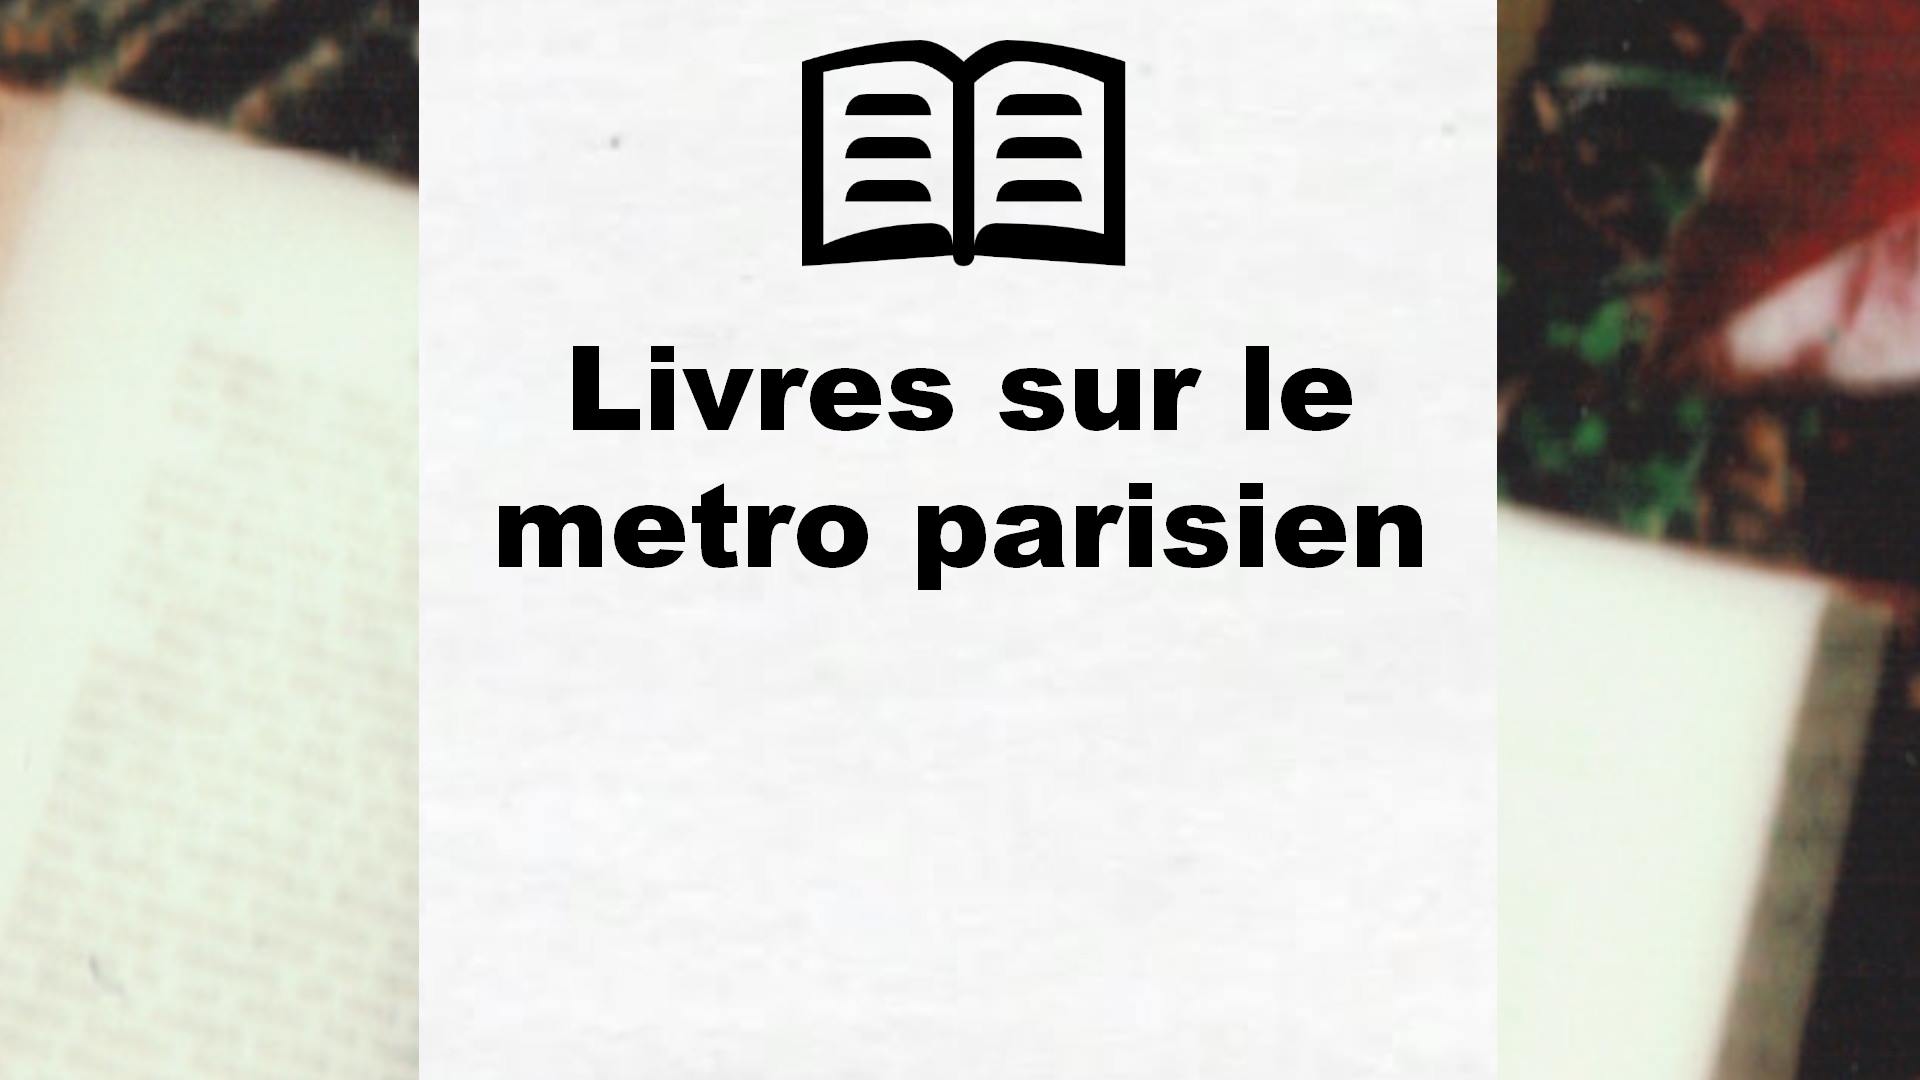 Livres sur le metro parisien